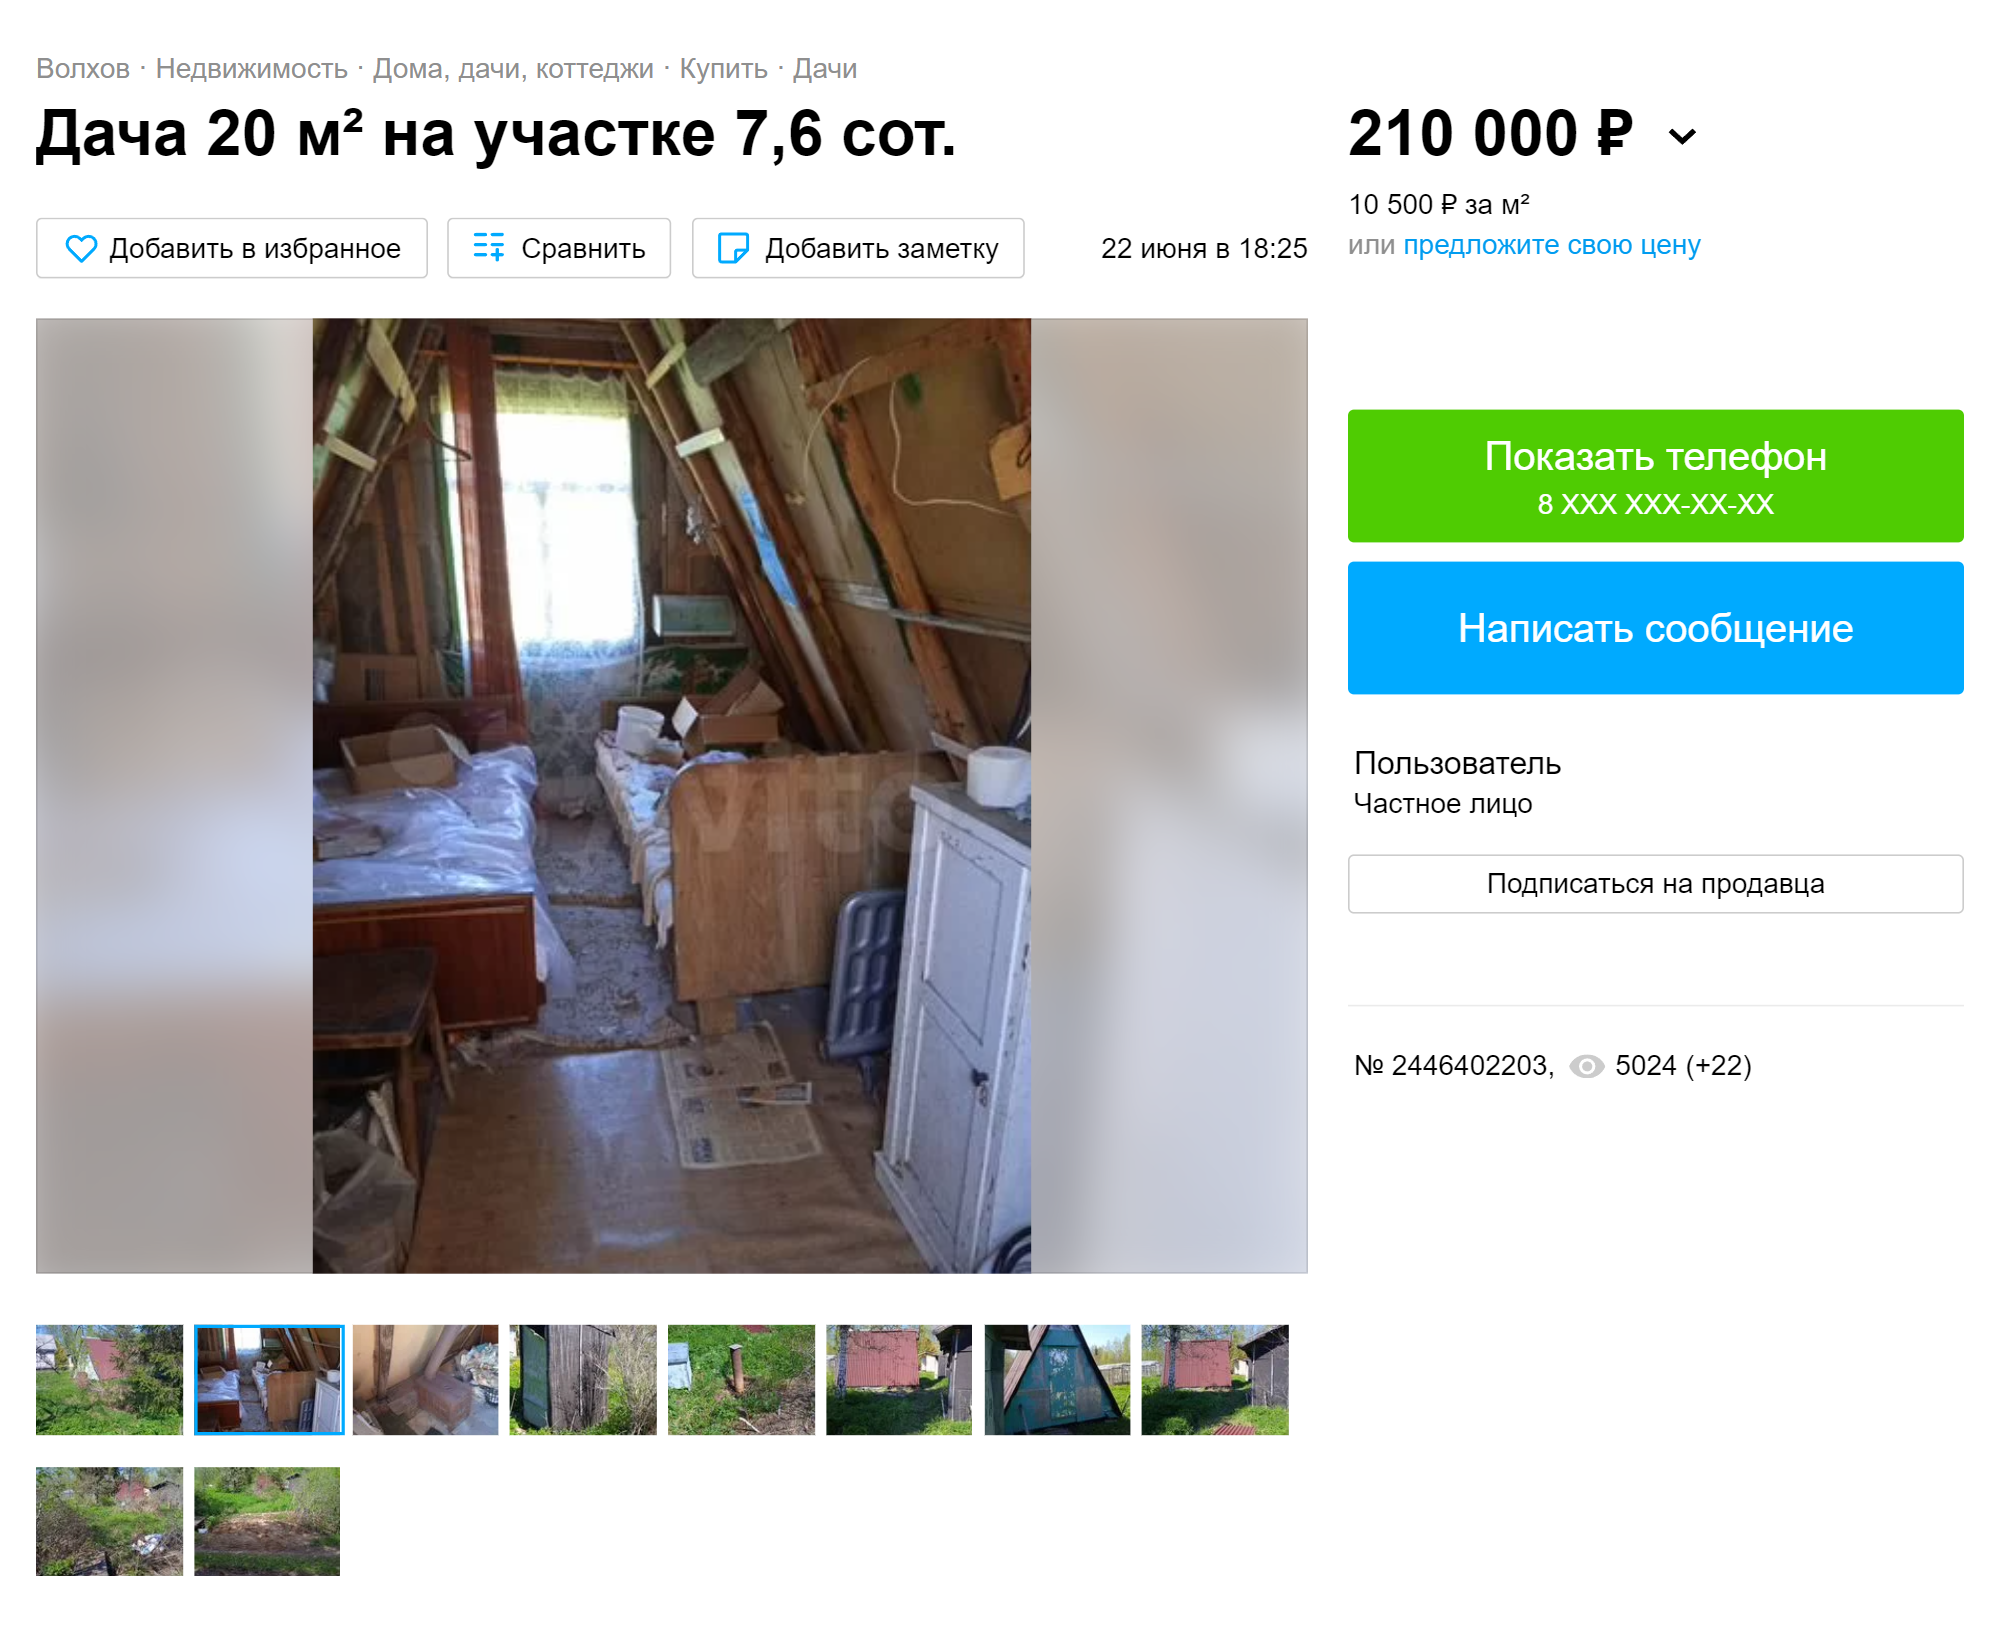 Среди готовых домов на наш бюджет была только всякая рухлядь. Этот дом за 210 000 ₽ стоит в ста километрах от Питера, внутри дома все убито. Источник: avito.ru